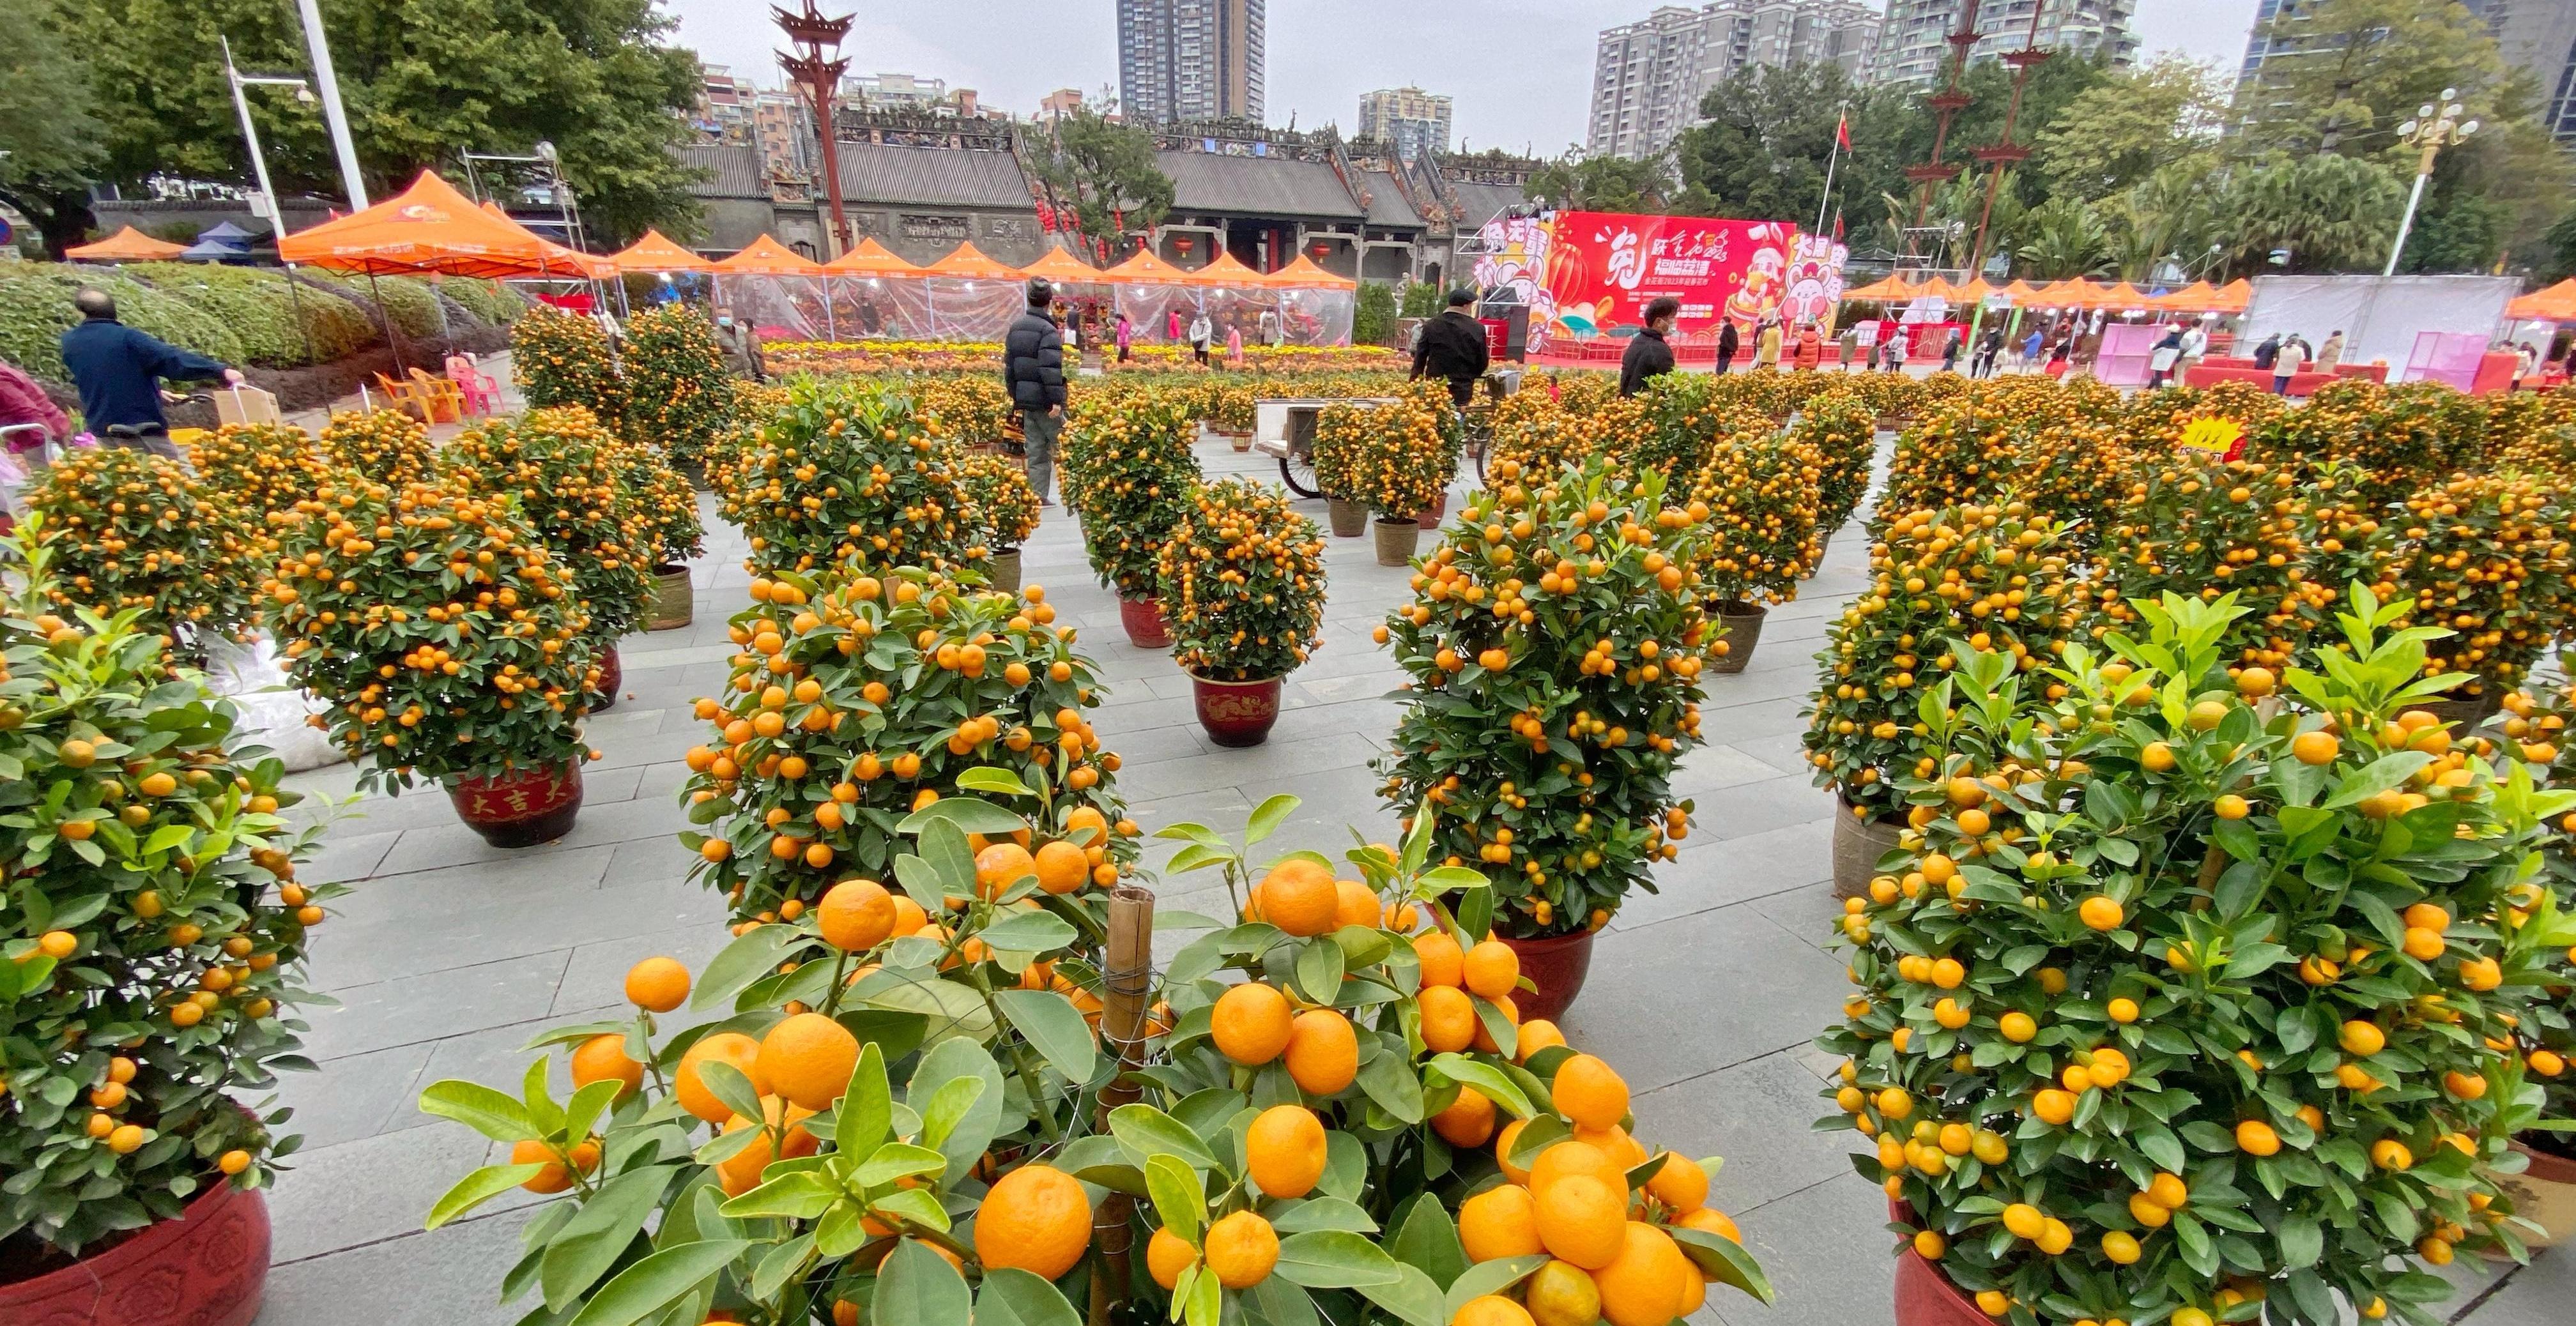  【图集】记者提前探：陈家祠广场的街区花市开始热闹了